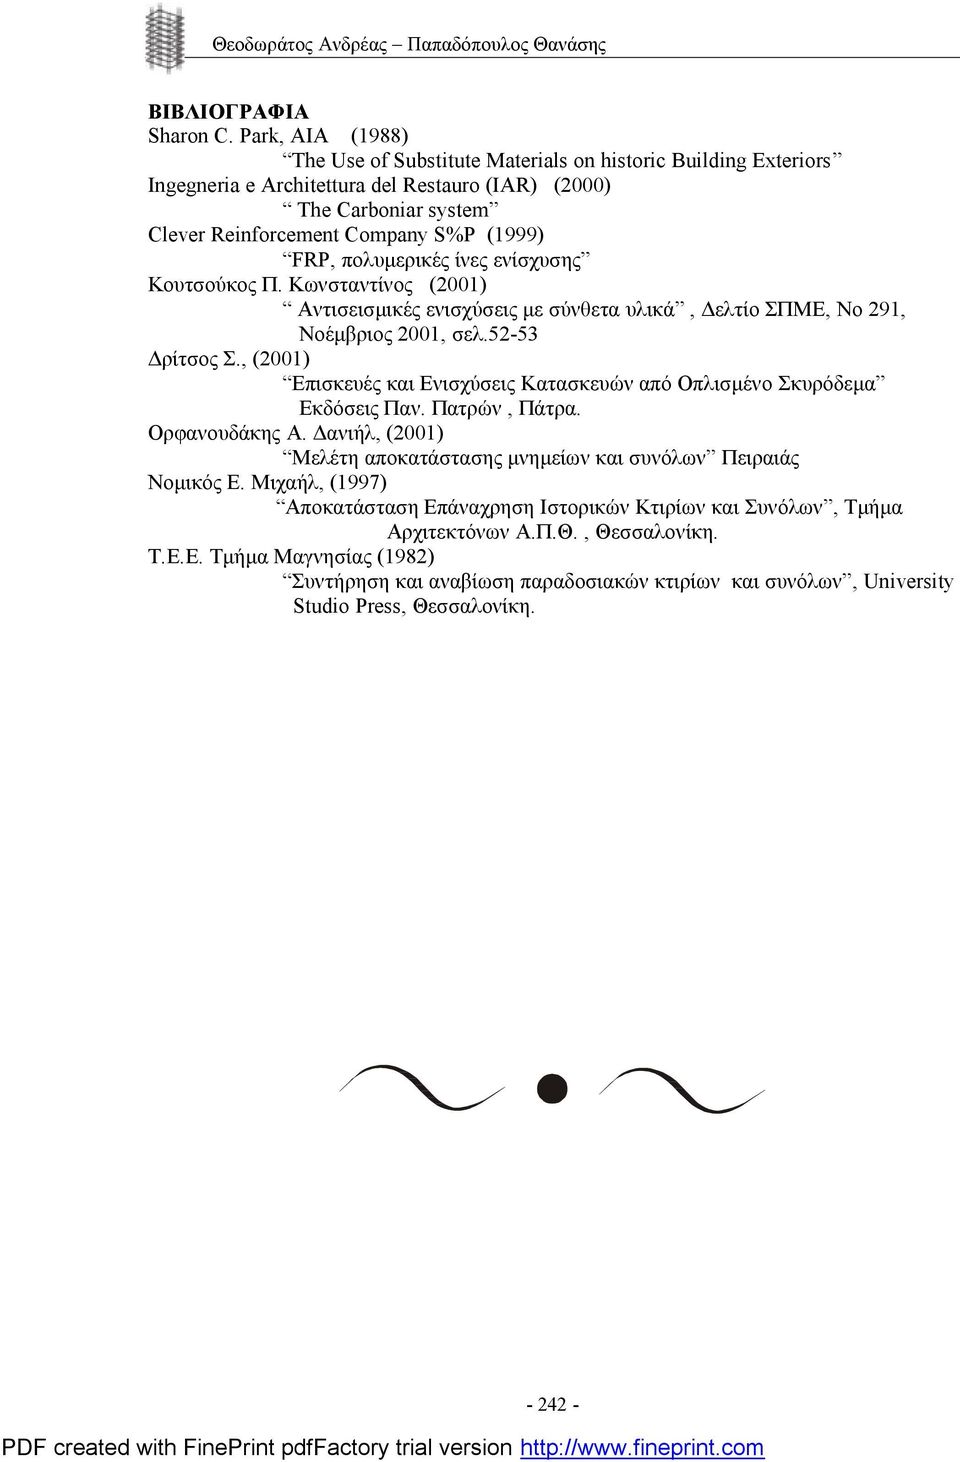 πολυμερικές ίνες ενίσχυσης Κουτσούκος Π. Κωνσταντίνος (2001) Αντισεισμικές ενισχύσεις με σύνθετα υλικά, Δελτίο ΣΠΜΕ, Νο 291, Νοέμβριος 2001, σελ.52-53 Δρίτσος Σ.